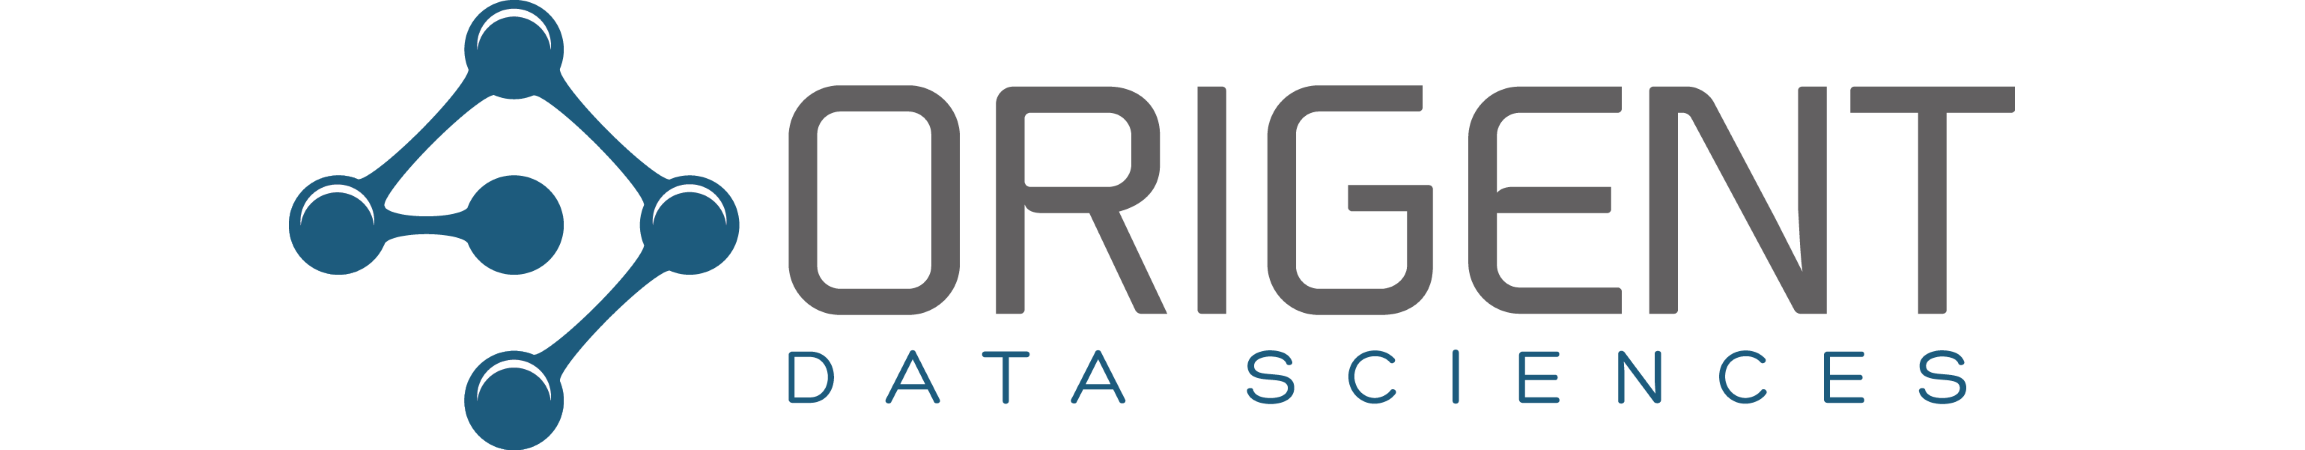 Origent Data Sciences